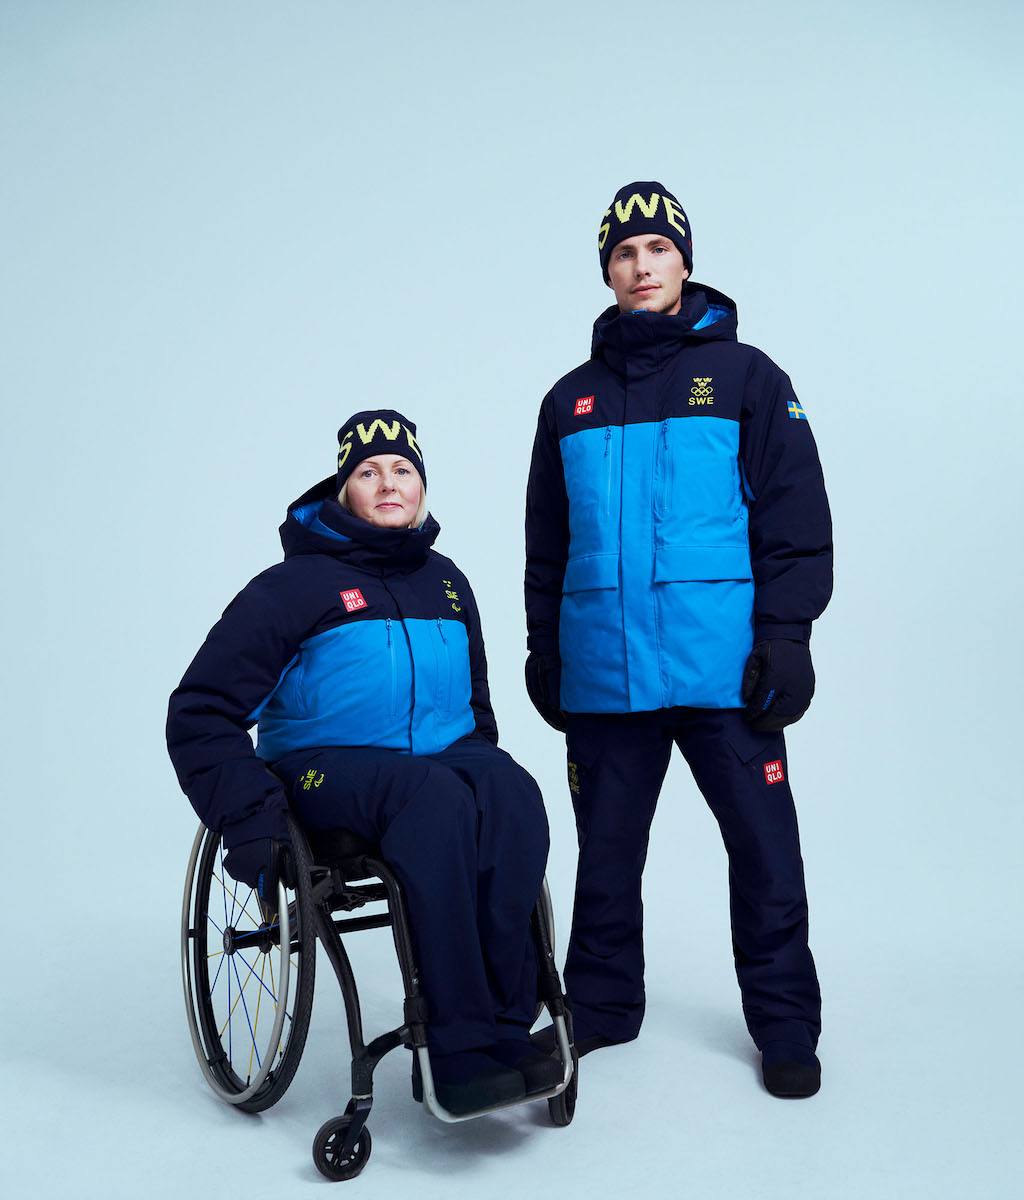 ユニクロ 北京冬季オリンピックのスウェーデン選手団に公式ウエアを提供 Wwdjapan